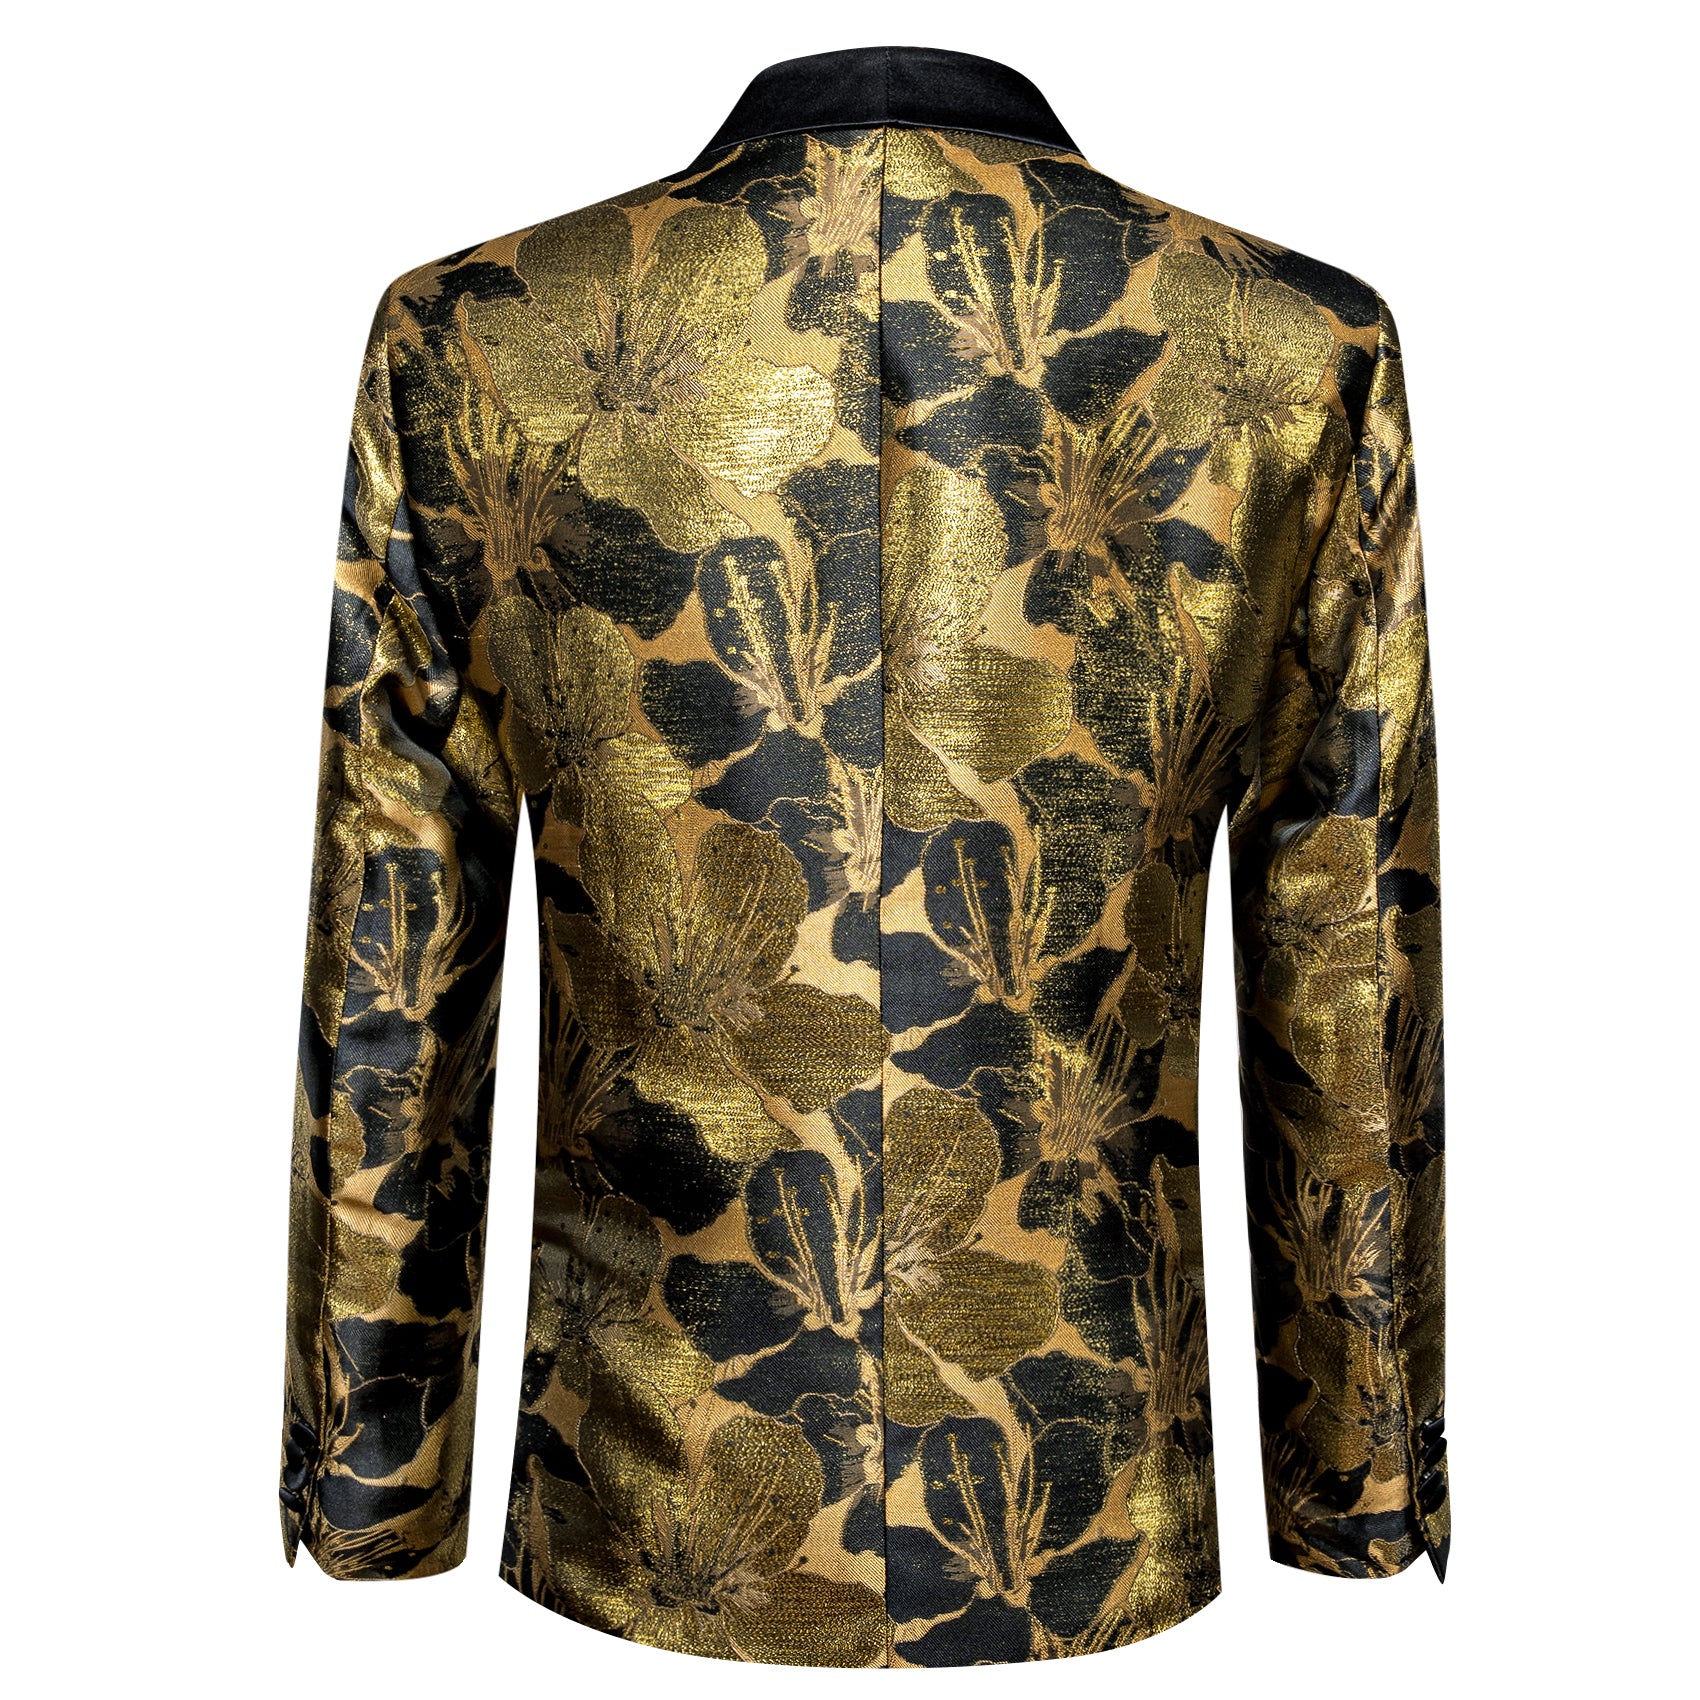 Men's Dress Party Gold Black Floral Suit Jacket Slim One Button Stylish Blazer